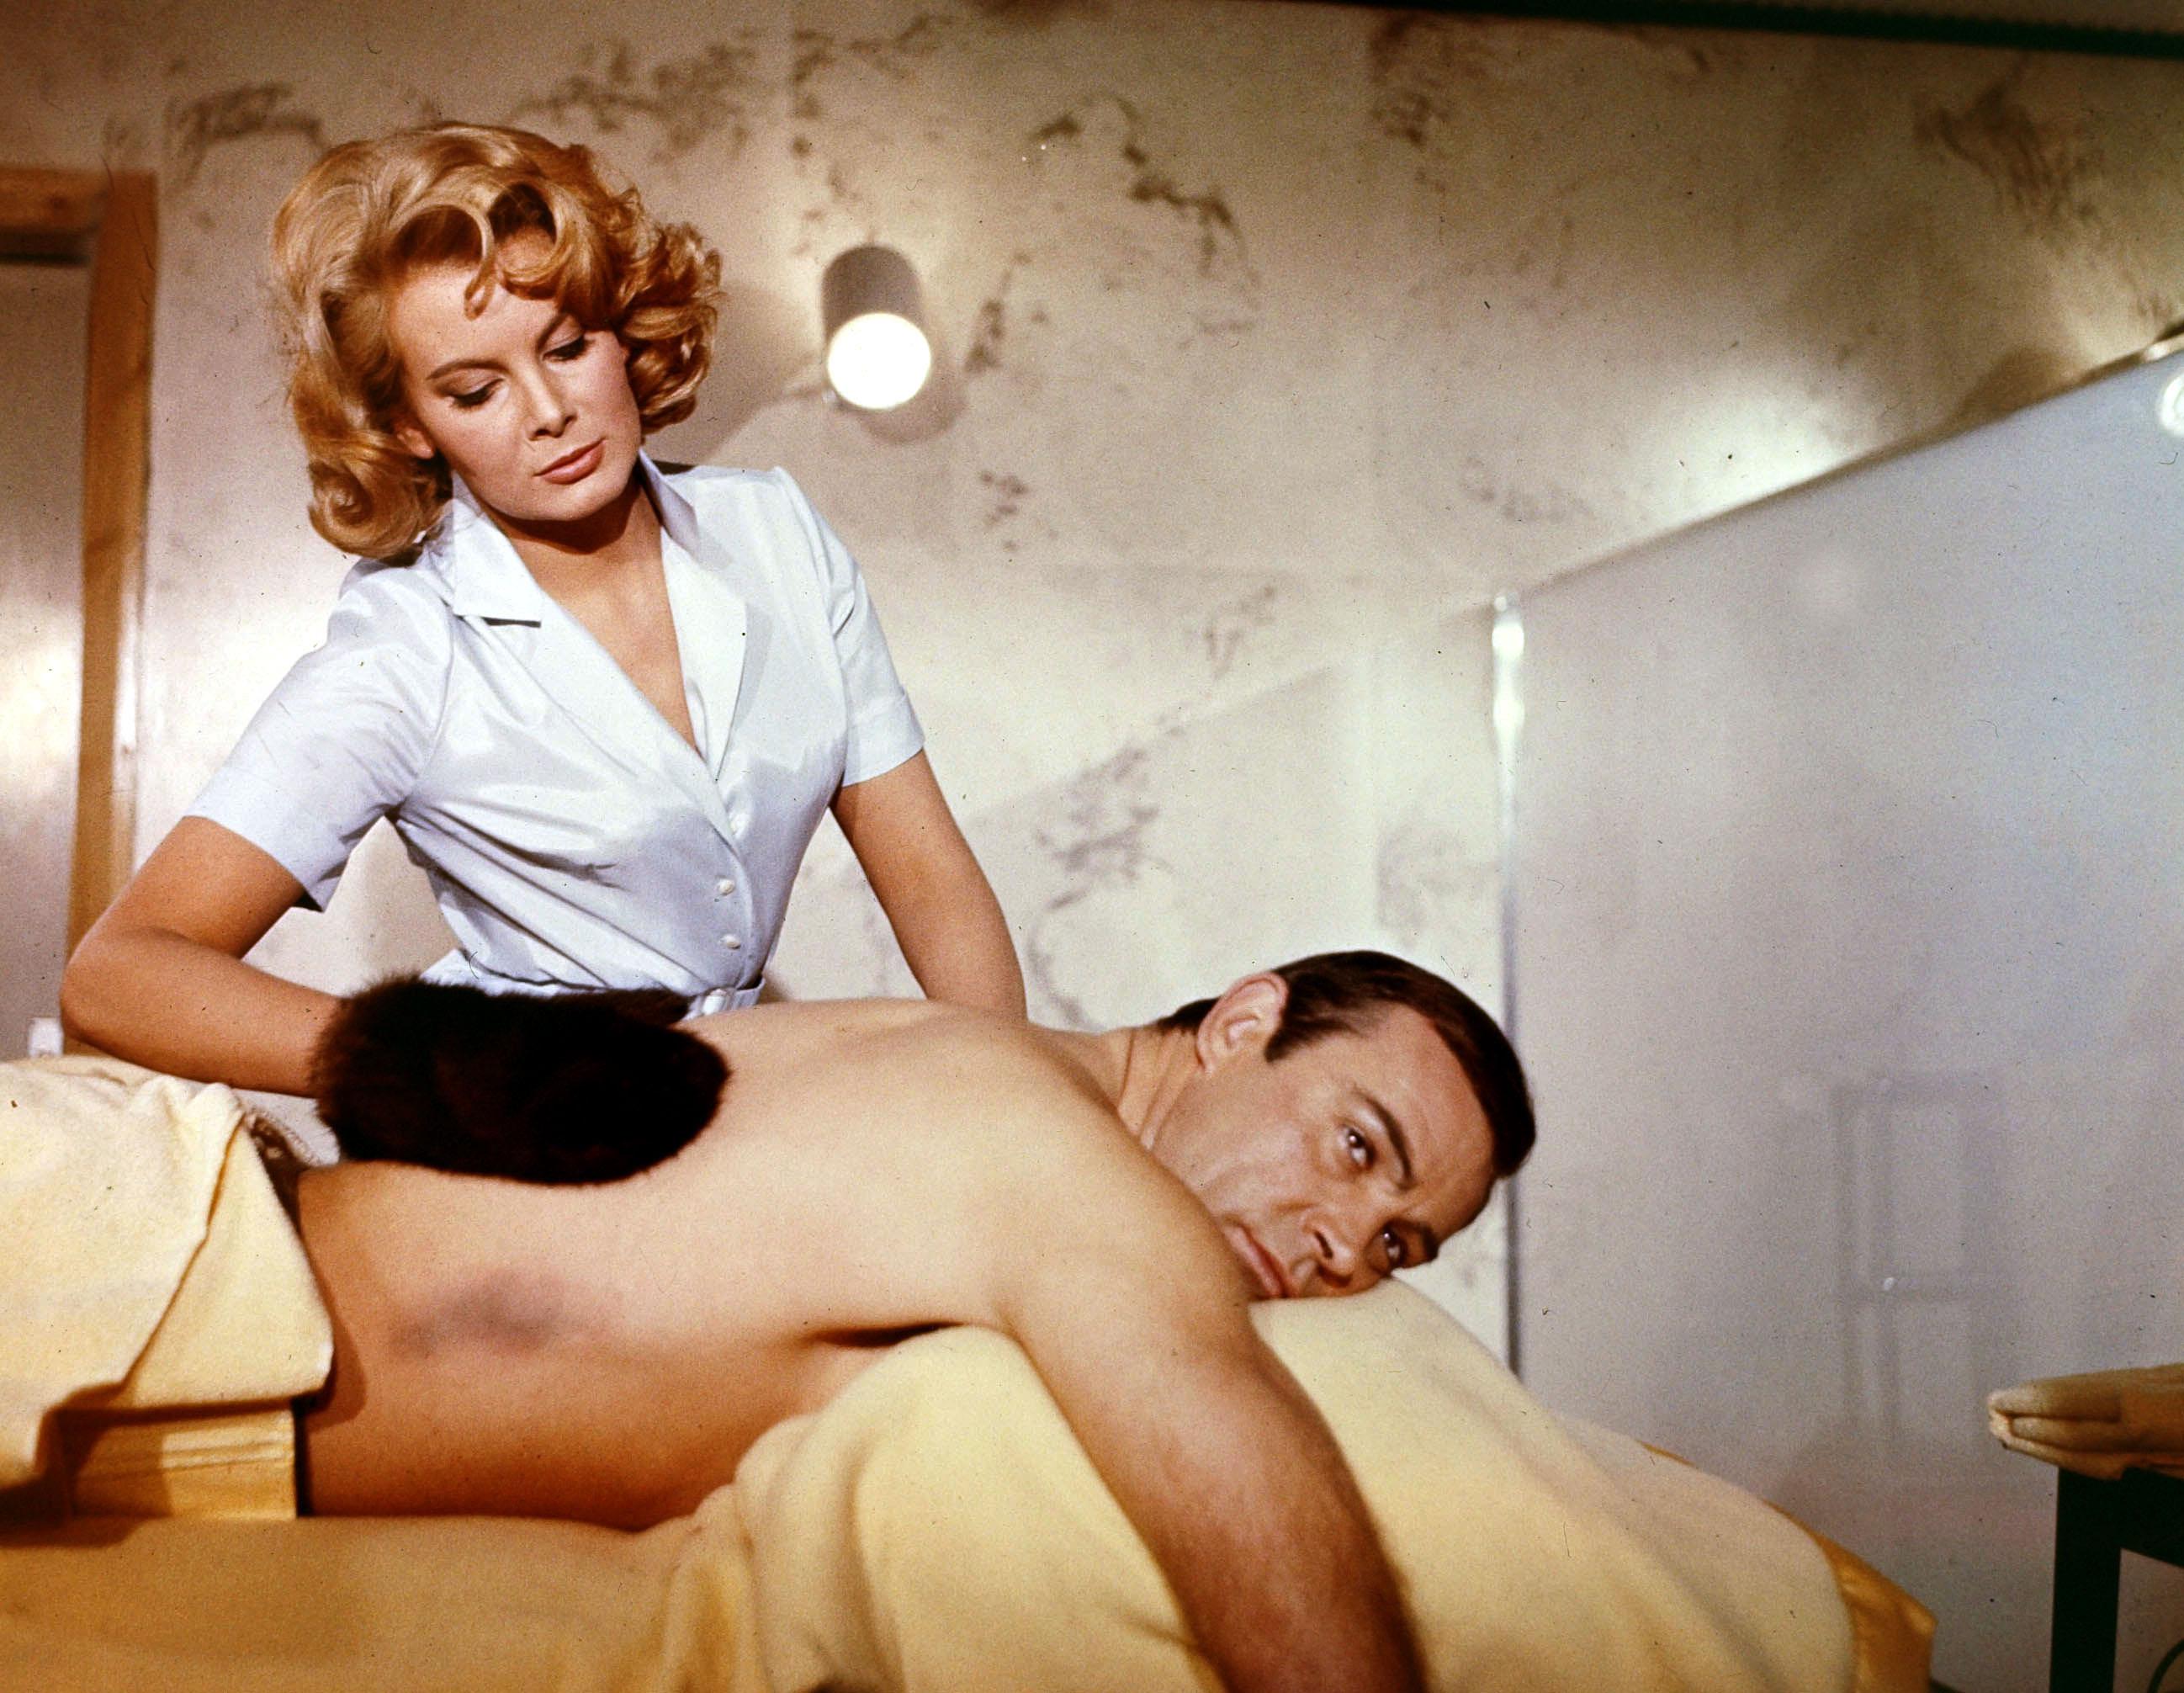 Молли, которая играла главную роль в качестве медсестры Патрисии Феаринг напротив «Шона 007» Шона, была, как известно, первой девушкой Бонда, которая сняла свою одежду на экране, вызвав споры и едва не заработав фильму рейтинг «Х»